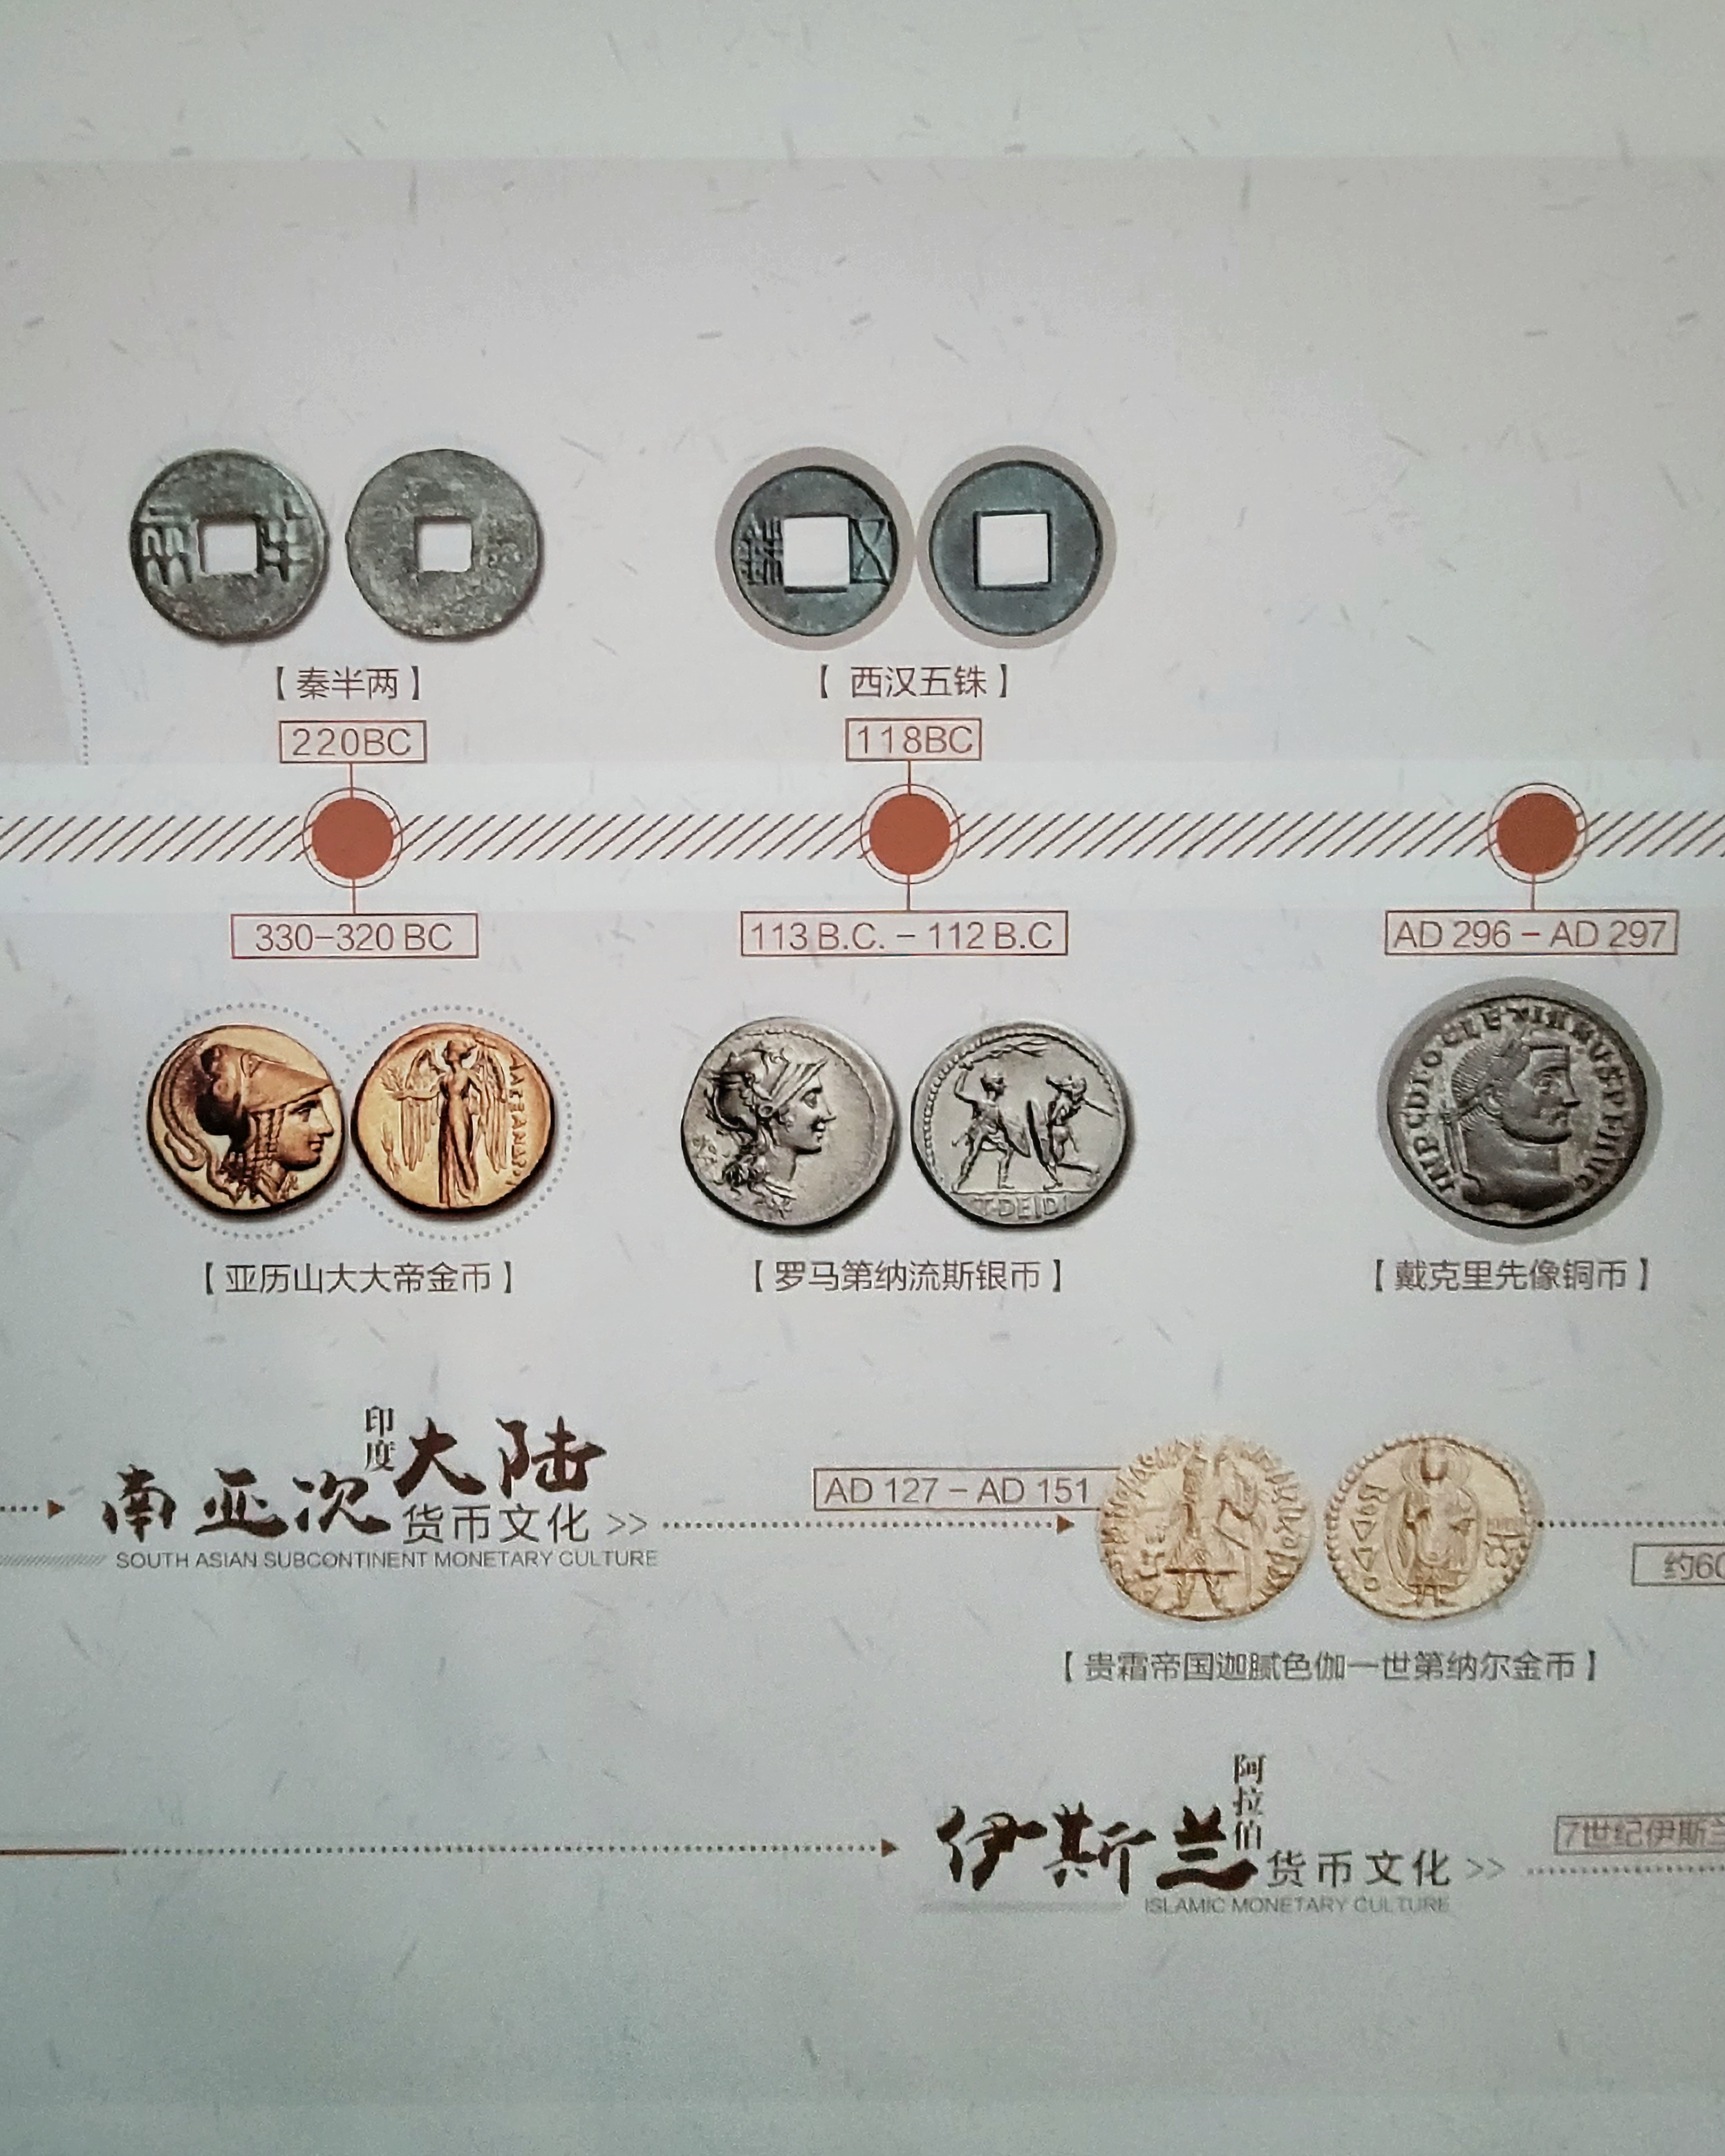 Χρονολογικός πίνακας αρχαίος νομισμάτων του κόσμου όπου φαίνονται και κάποια ελληνικά, στην μόνιμη έκθεση του Νομισματικού Μουσείου της Κίνας (中国钱币博物馆: zhōngguó qiánbì bówùguǎn) στο Πεκίνο (Φωτογραφία Εύα Παπαζή/CRI Greek)